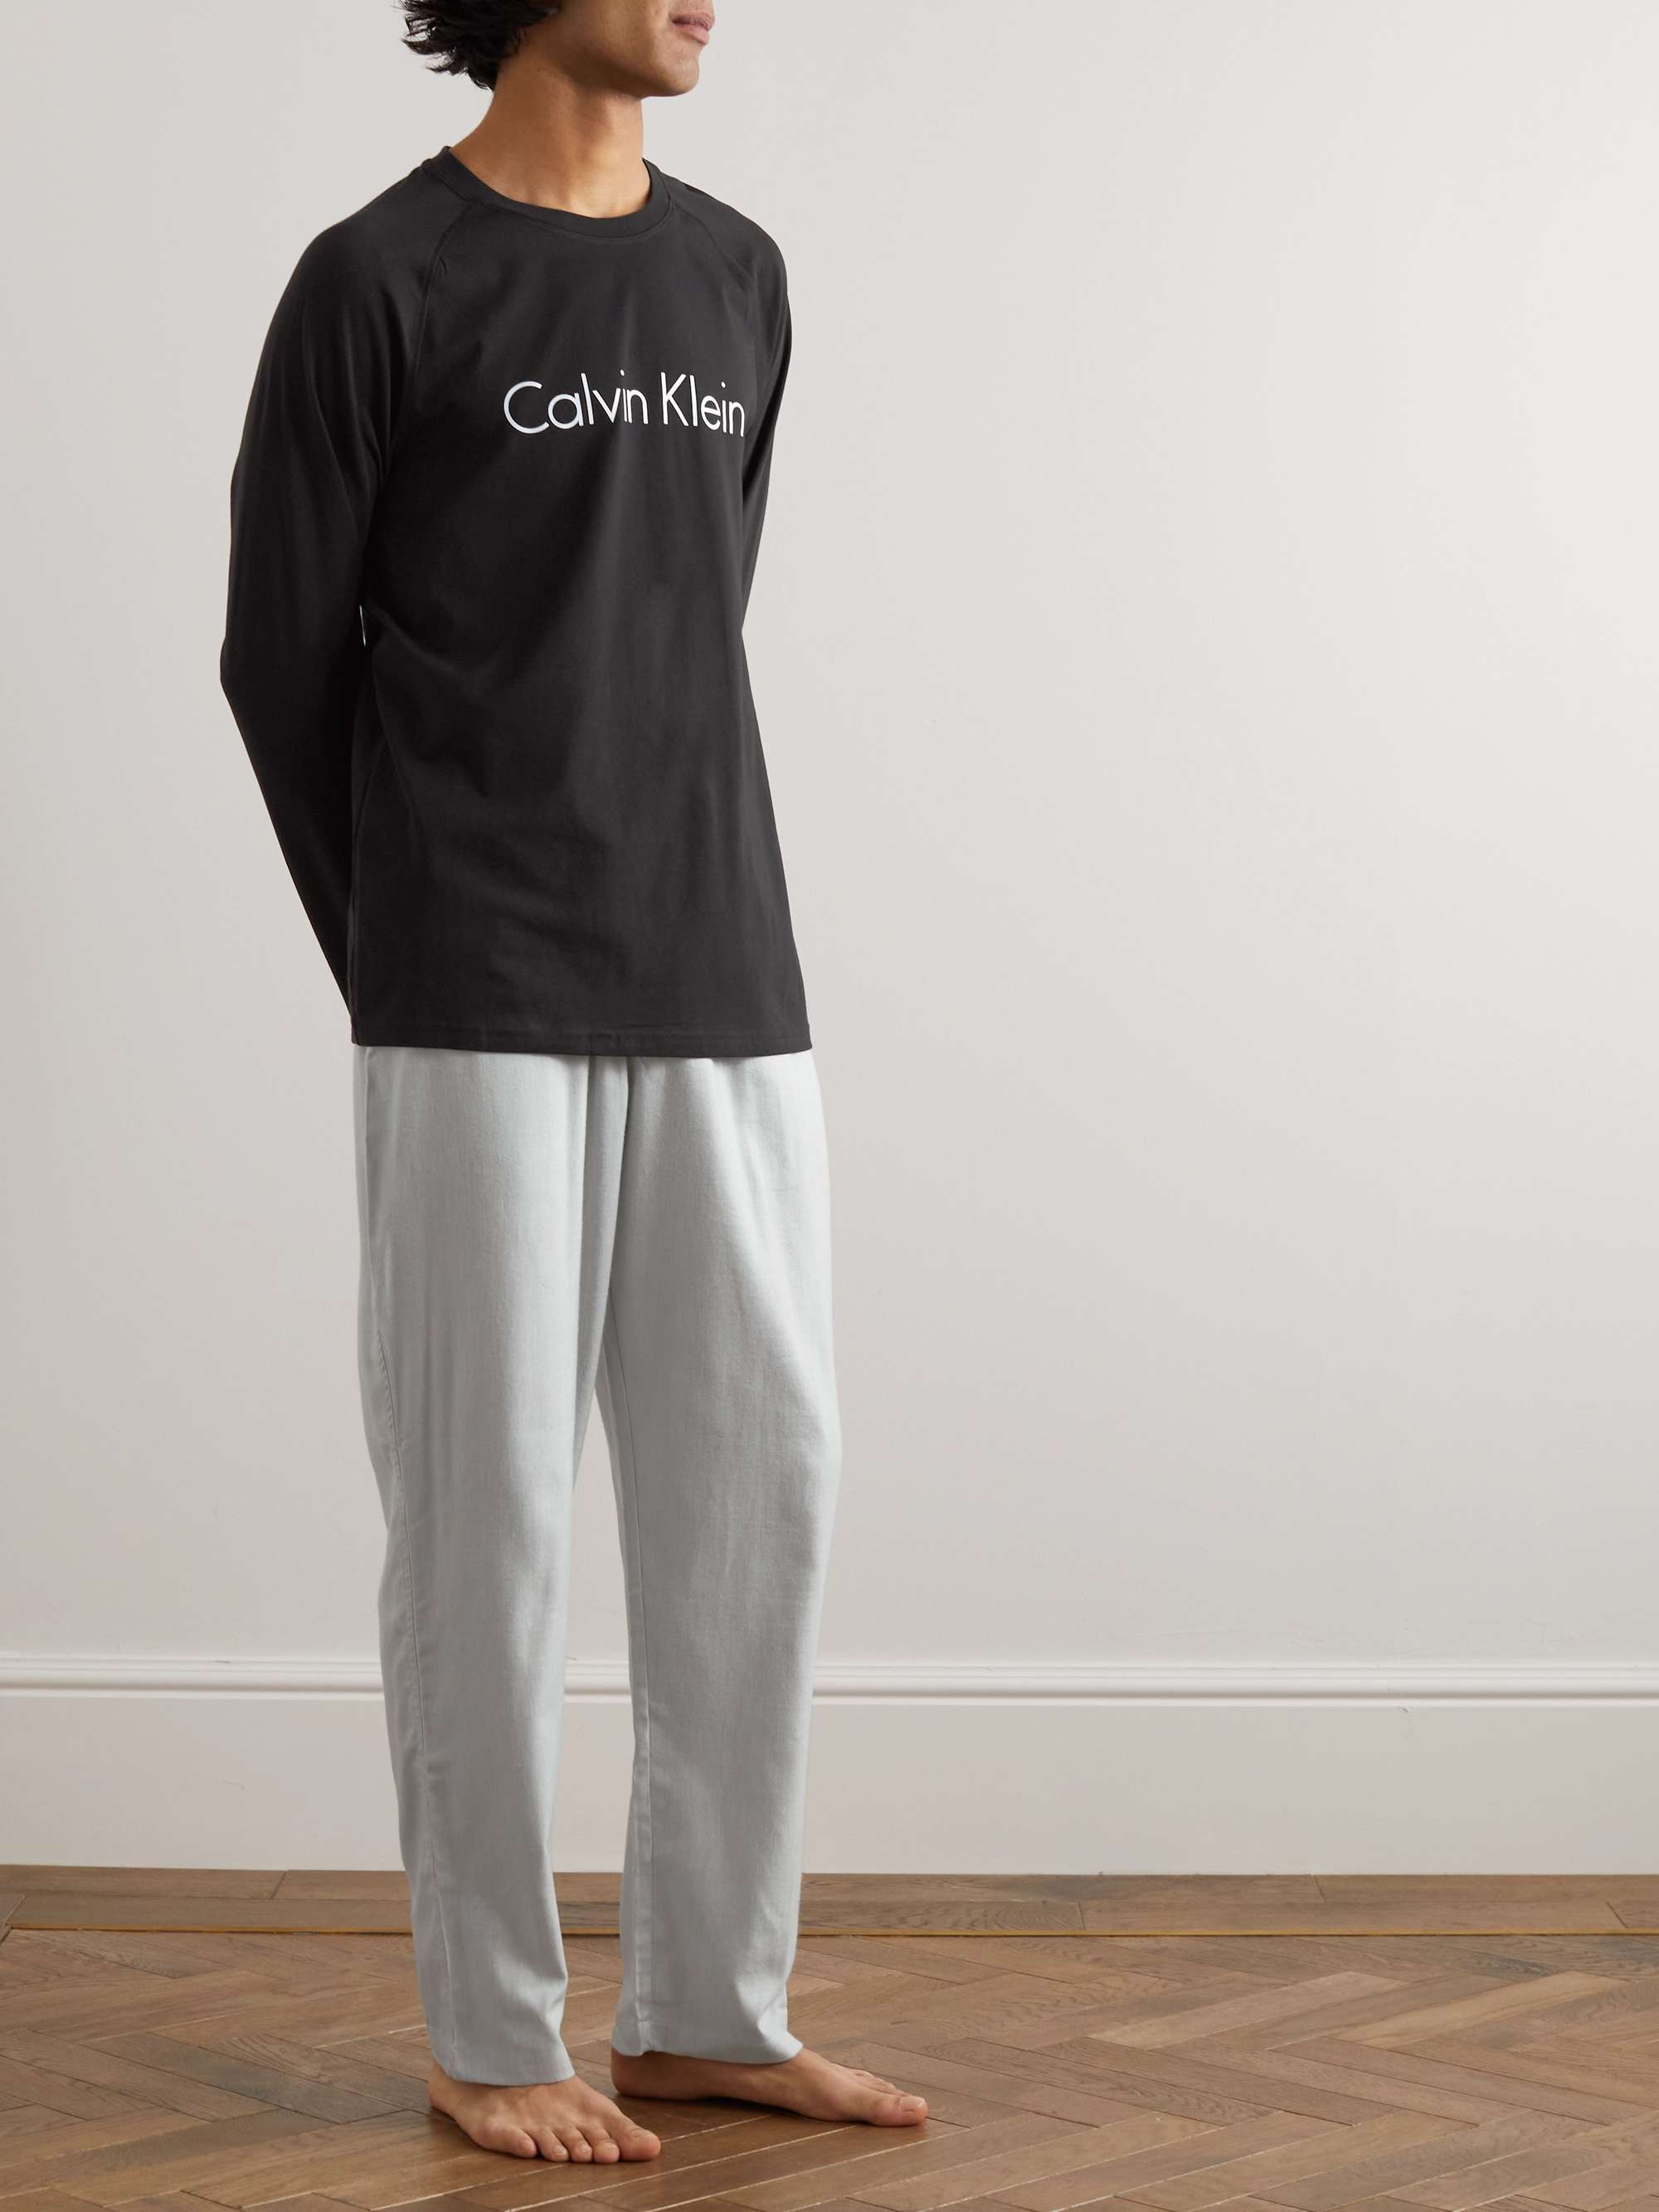 CALVIN KLEIN UNDERWEAR Logo-Print Cotton-Blend Jersey Pyjama Set